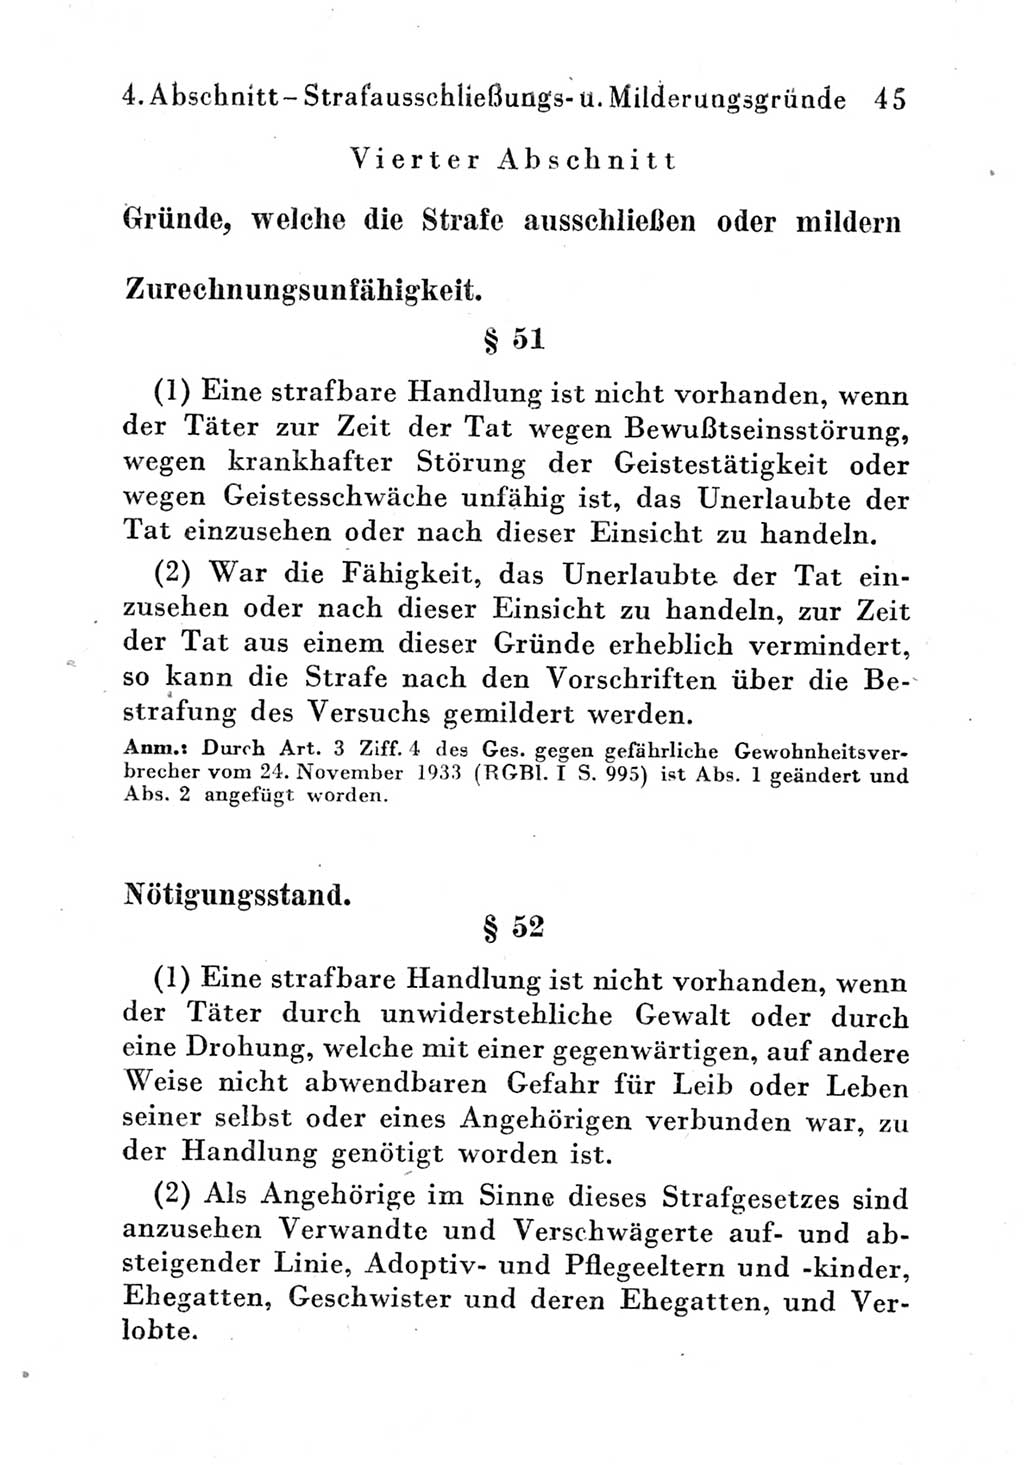 Strafgesetzbuch (StGB) und andere Strafgesetze [Deutsche Demokratische Republik (DDR)] 1951, Seite 45 (StGB Strafges. DDR 1951, S. 45)